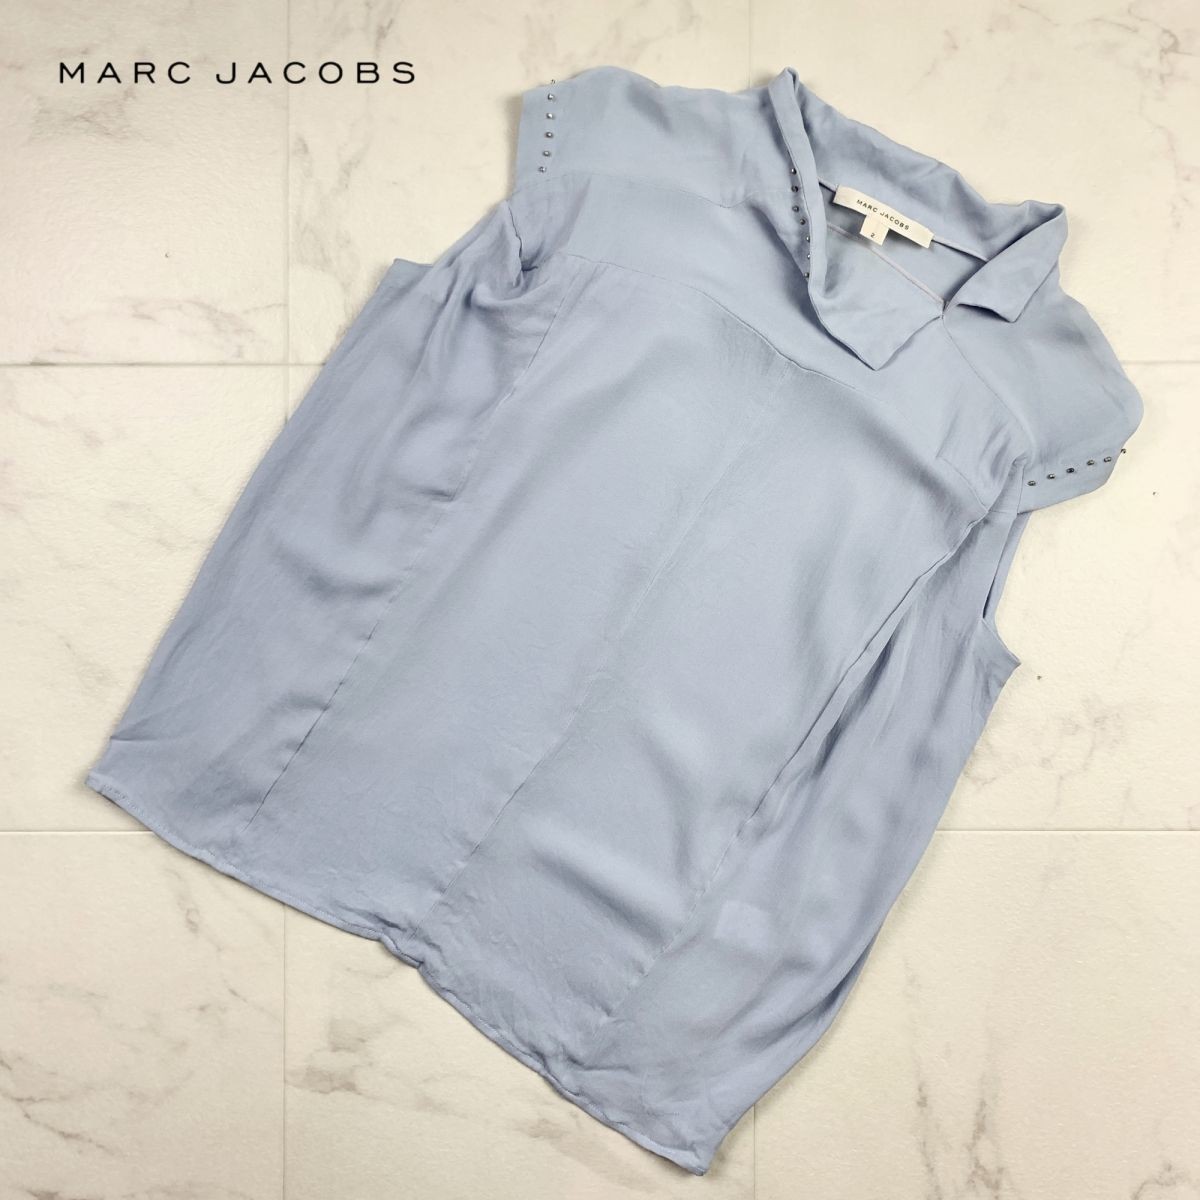 Marc Jacobs Mark Jacobs Blouse Blouse High Neck Bijou Светло светло -голубой синий размер 2*HB1662